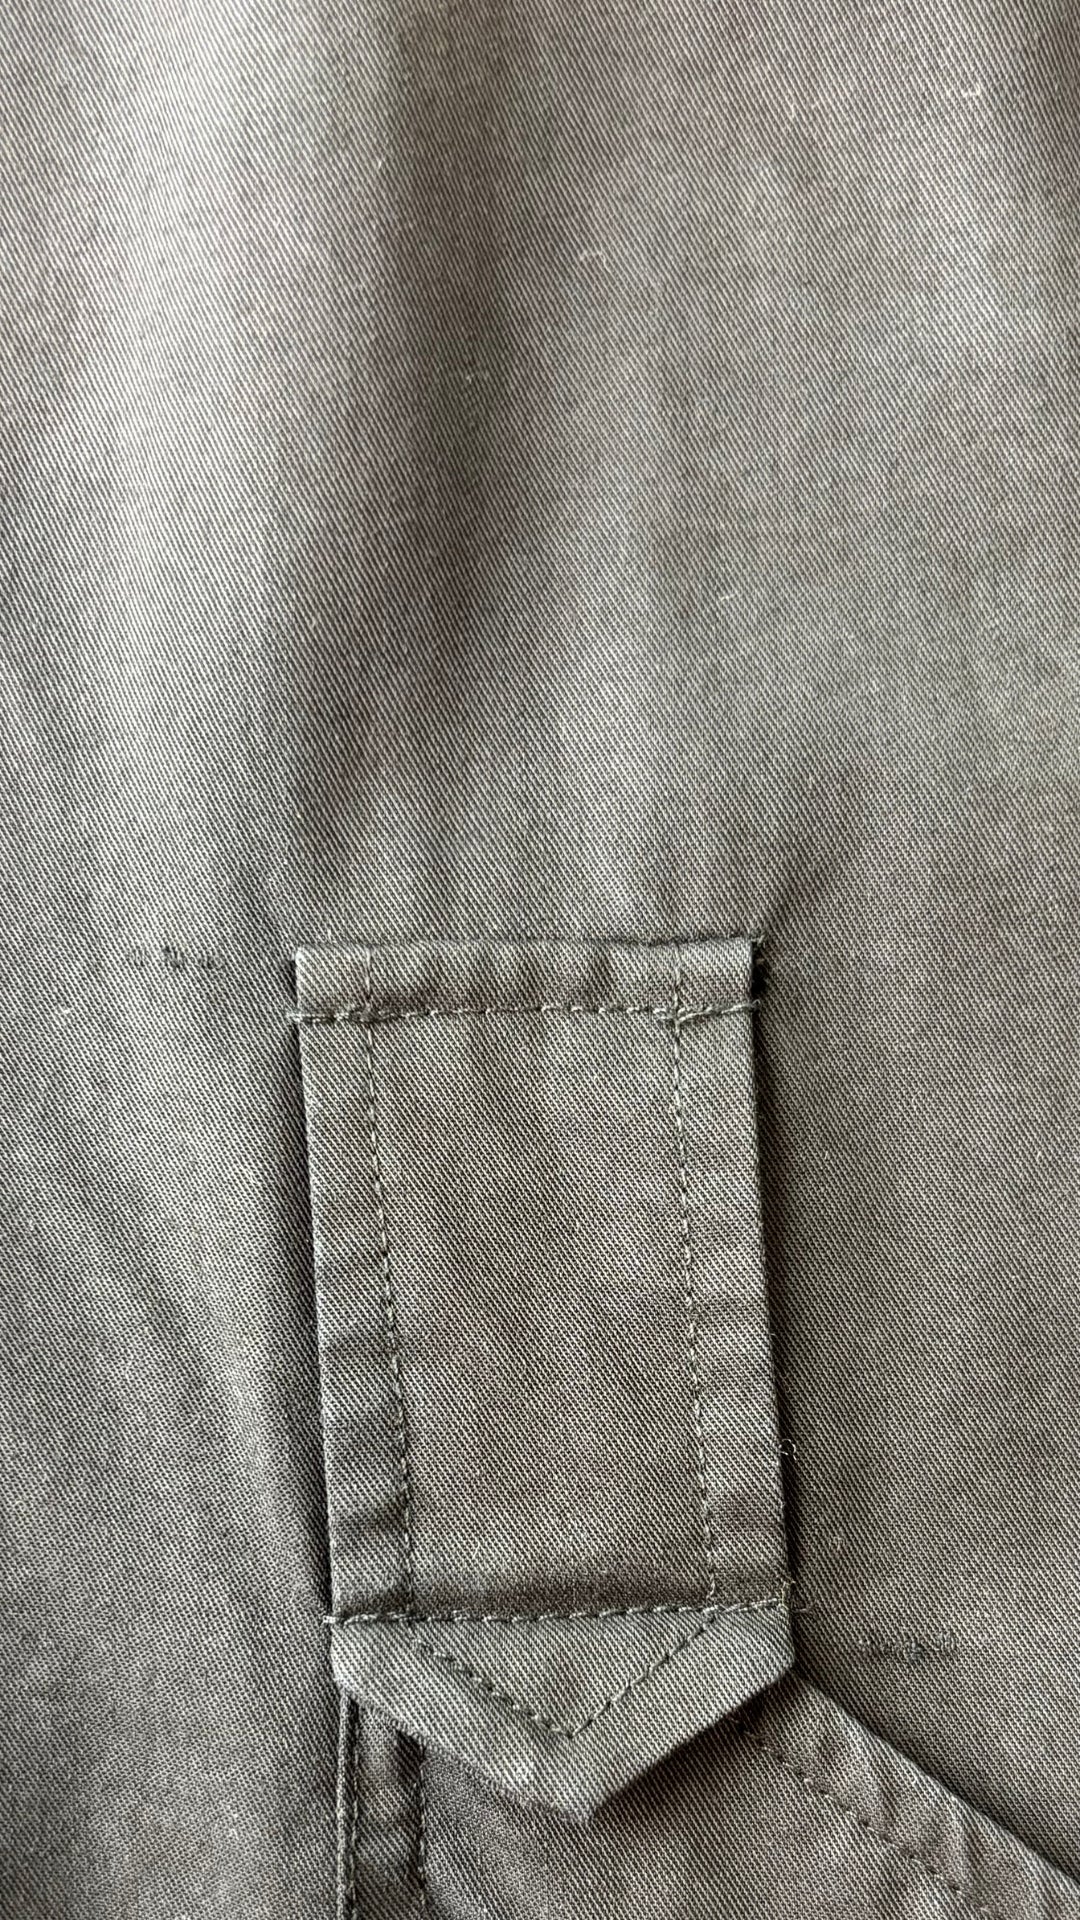 Robe à poches épaules décorées en Tencel Contemporaine, taille xl. Vue de petites imperfections près de la ganses de ceinture.